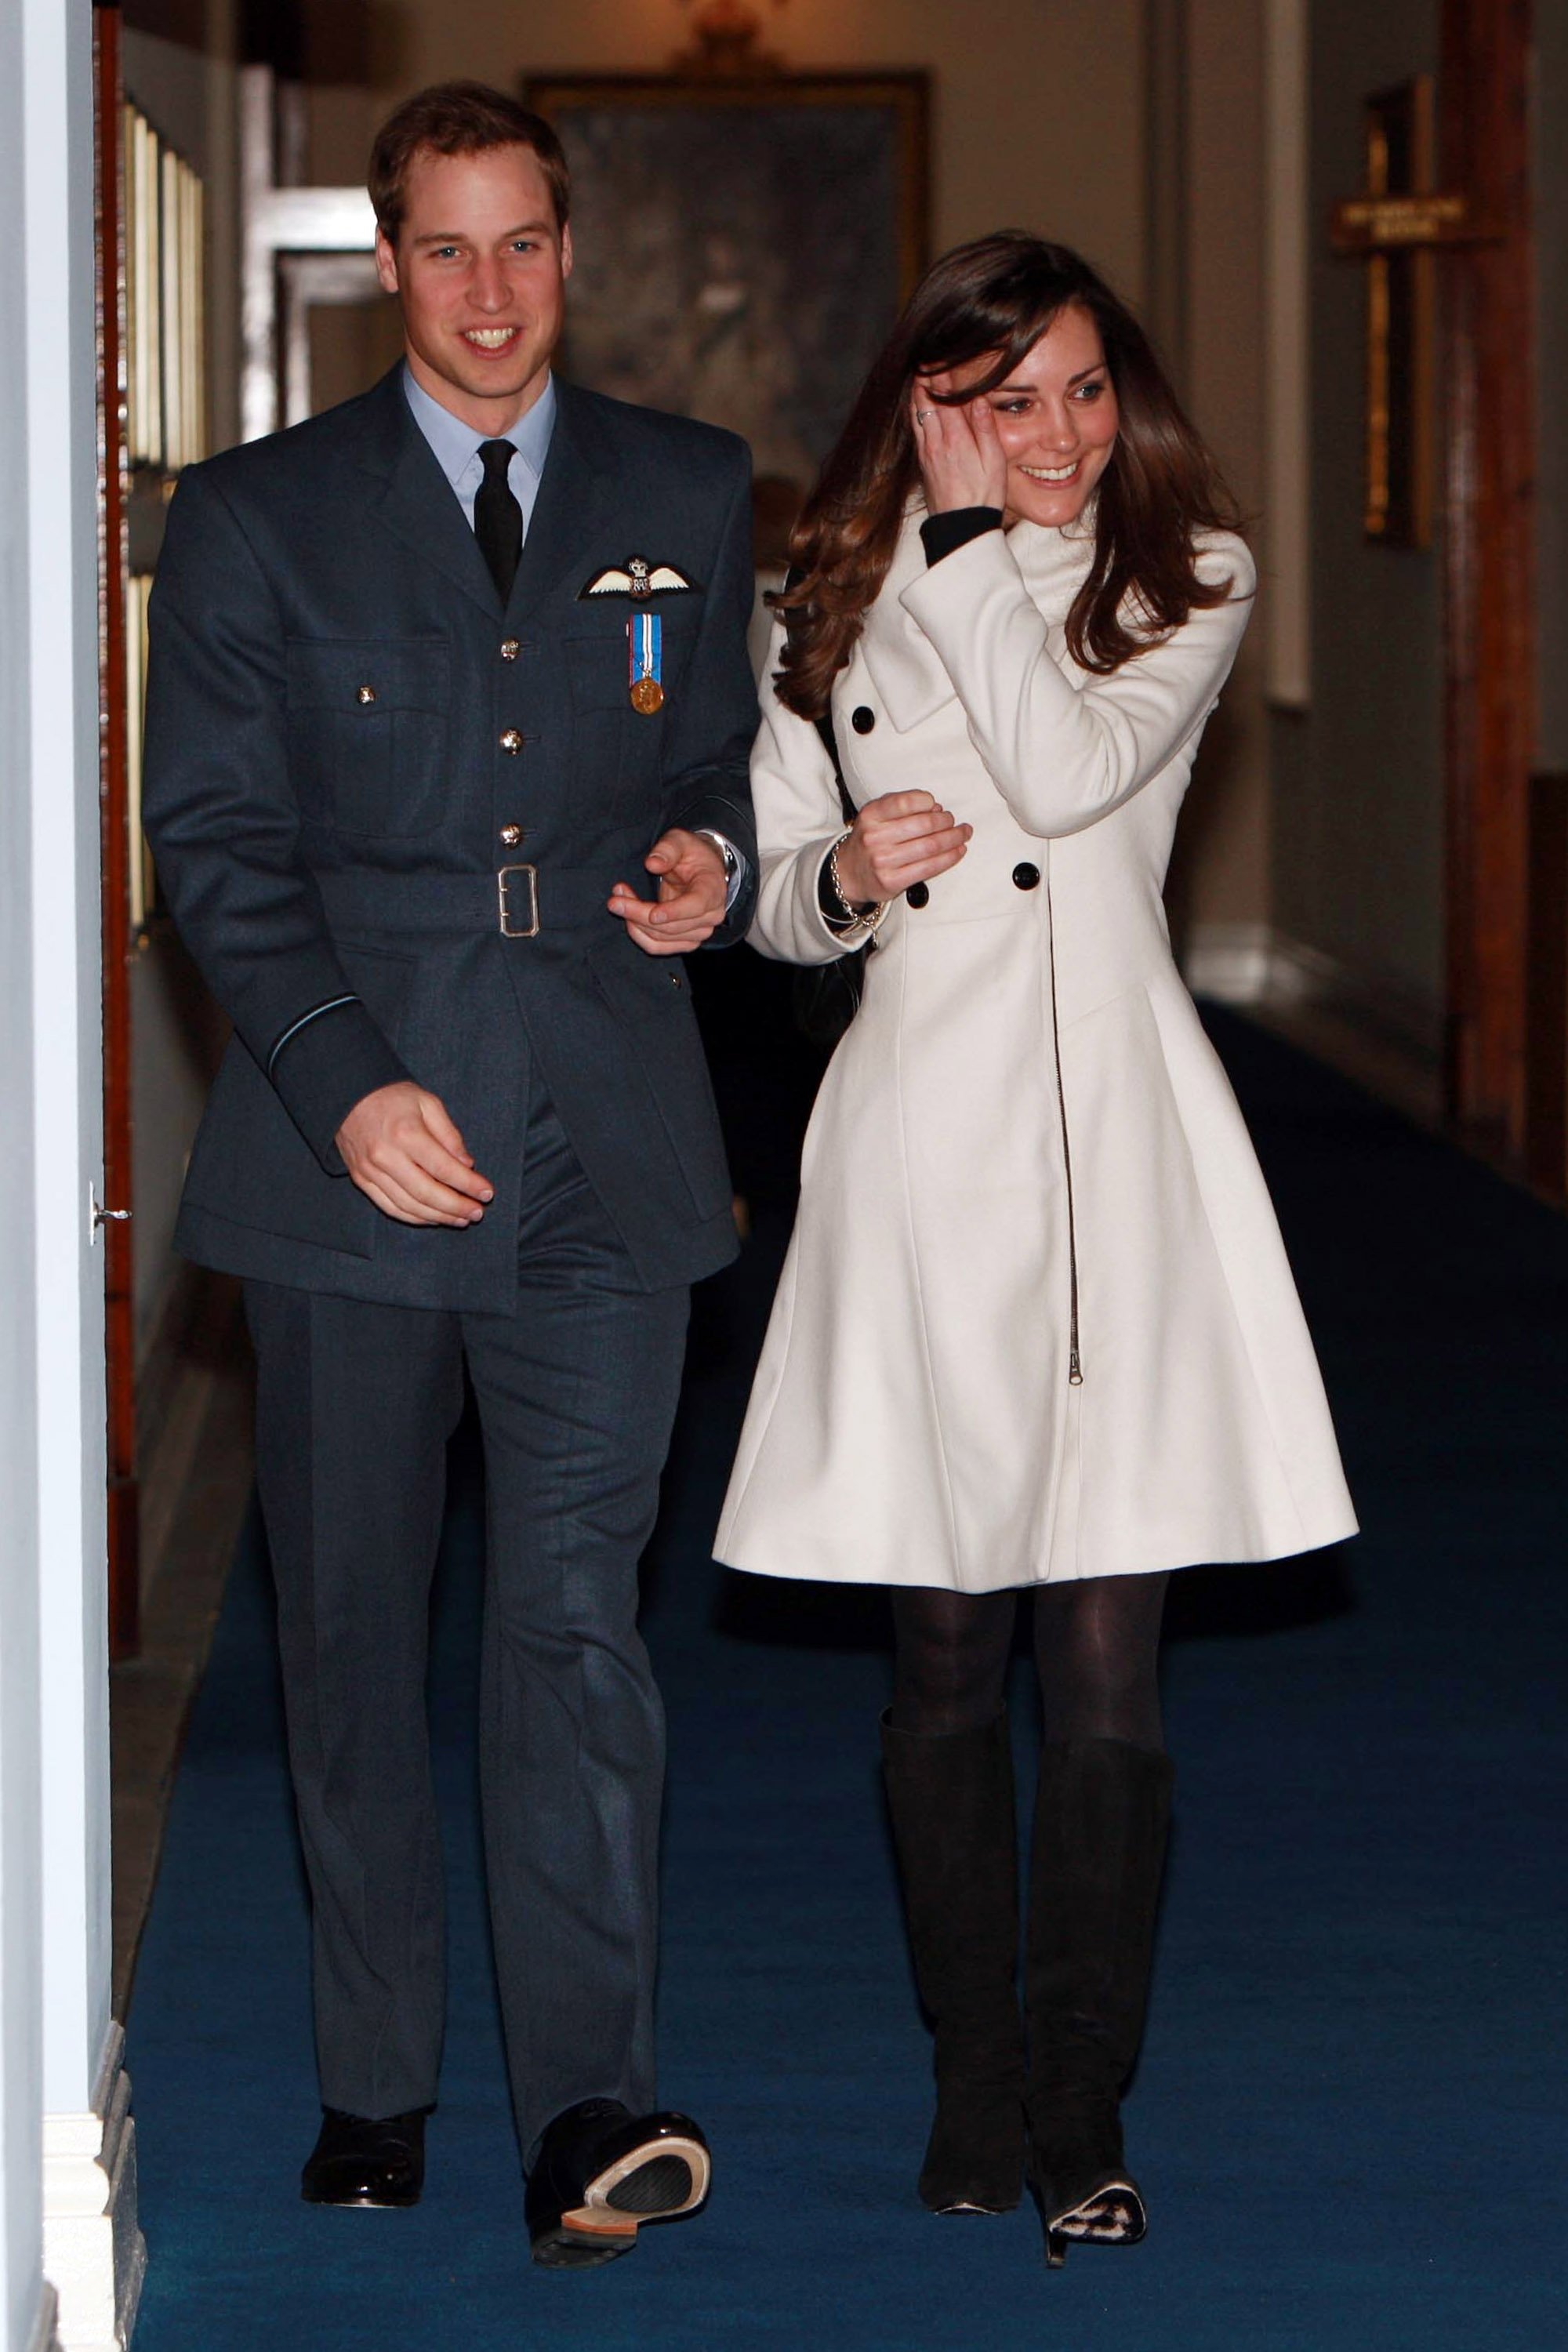 Prinz William mit seiner Freundin Kate Middleton nach seiner Abschlussfeier bei RAF Cranwell am 11. April 2008 in Cranwell, England | Quelle: Getty Images